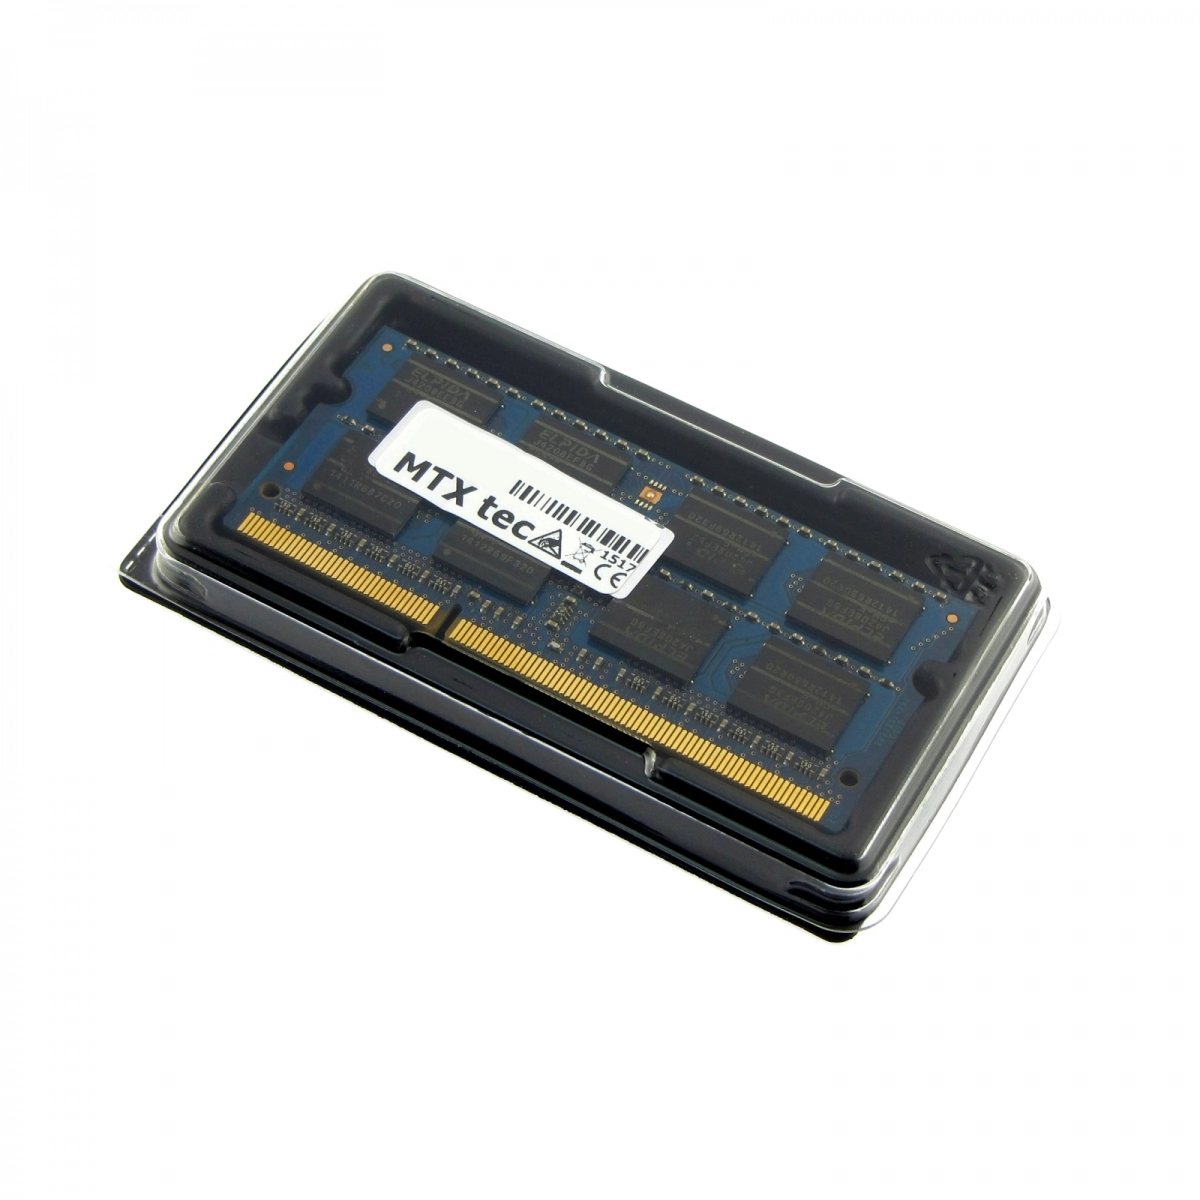 MTXtec Arbeitsspeicher 4 GB RAM für DELL Vostro 3550